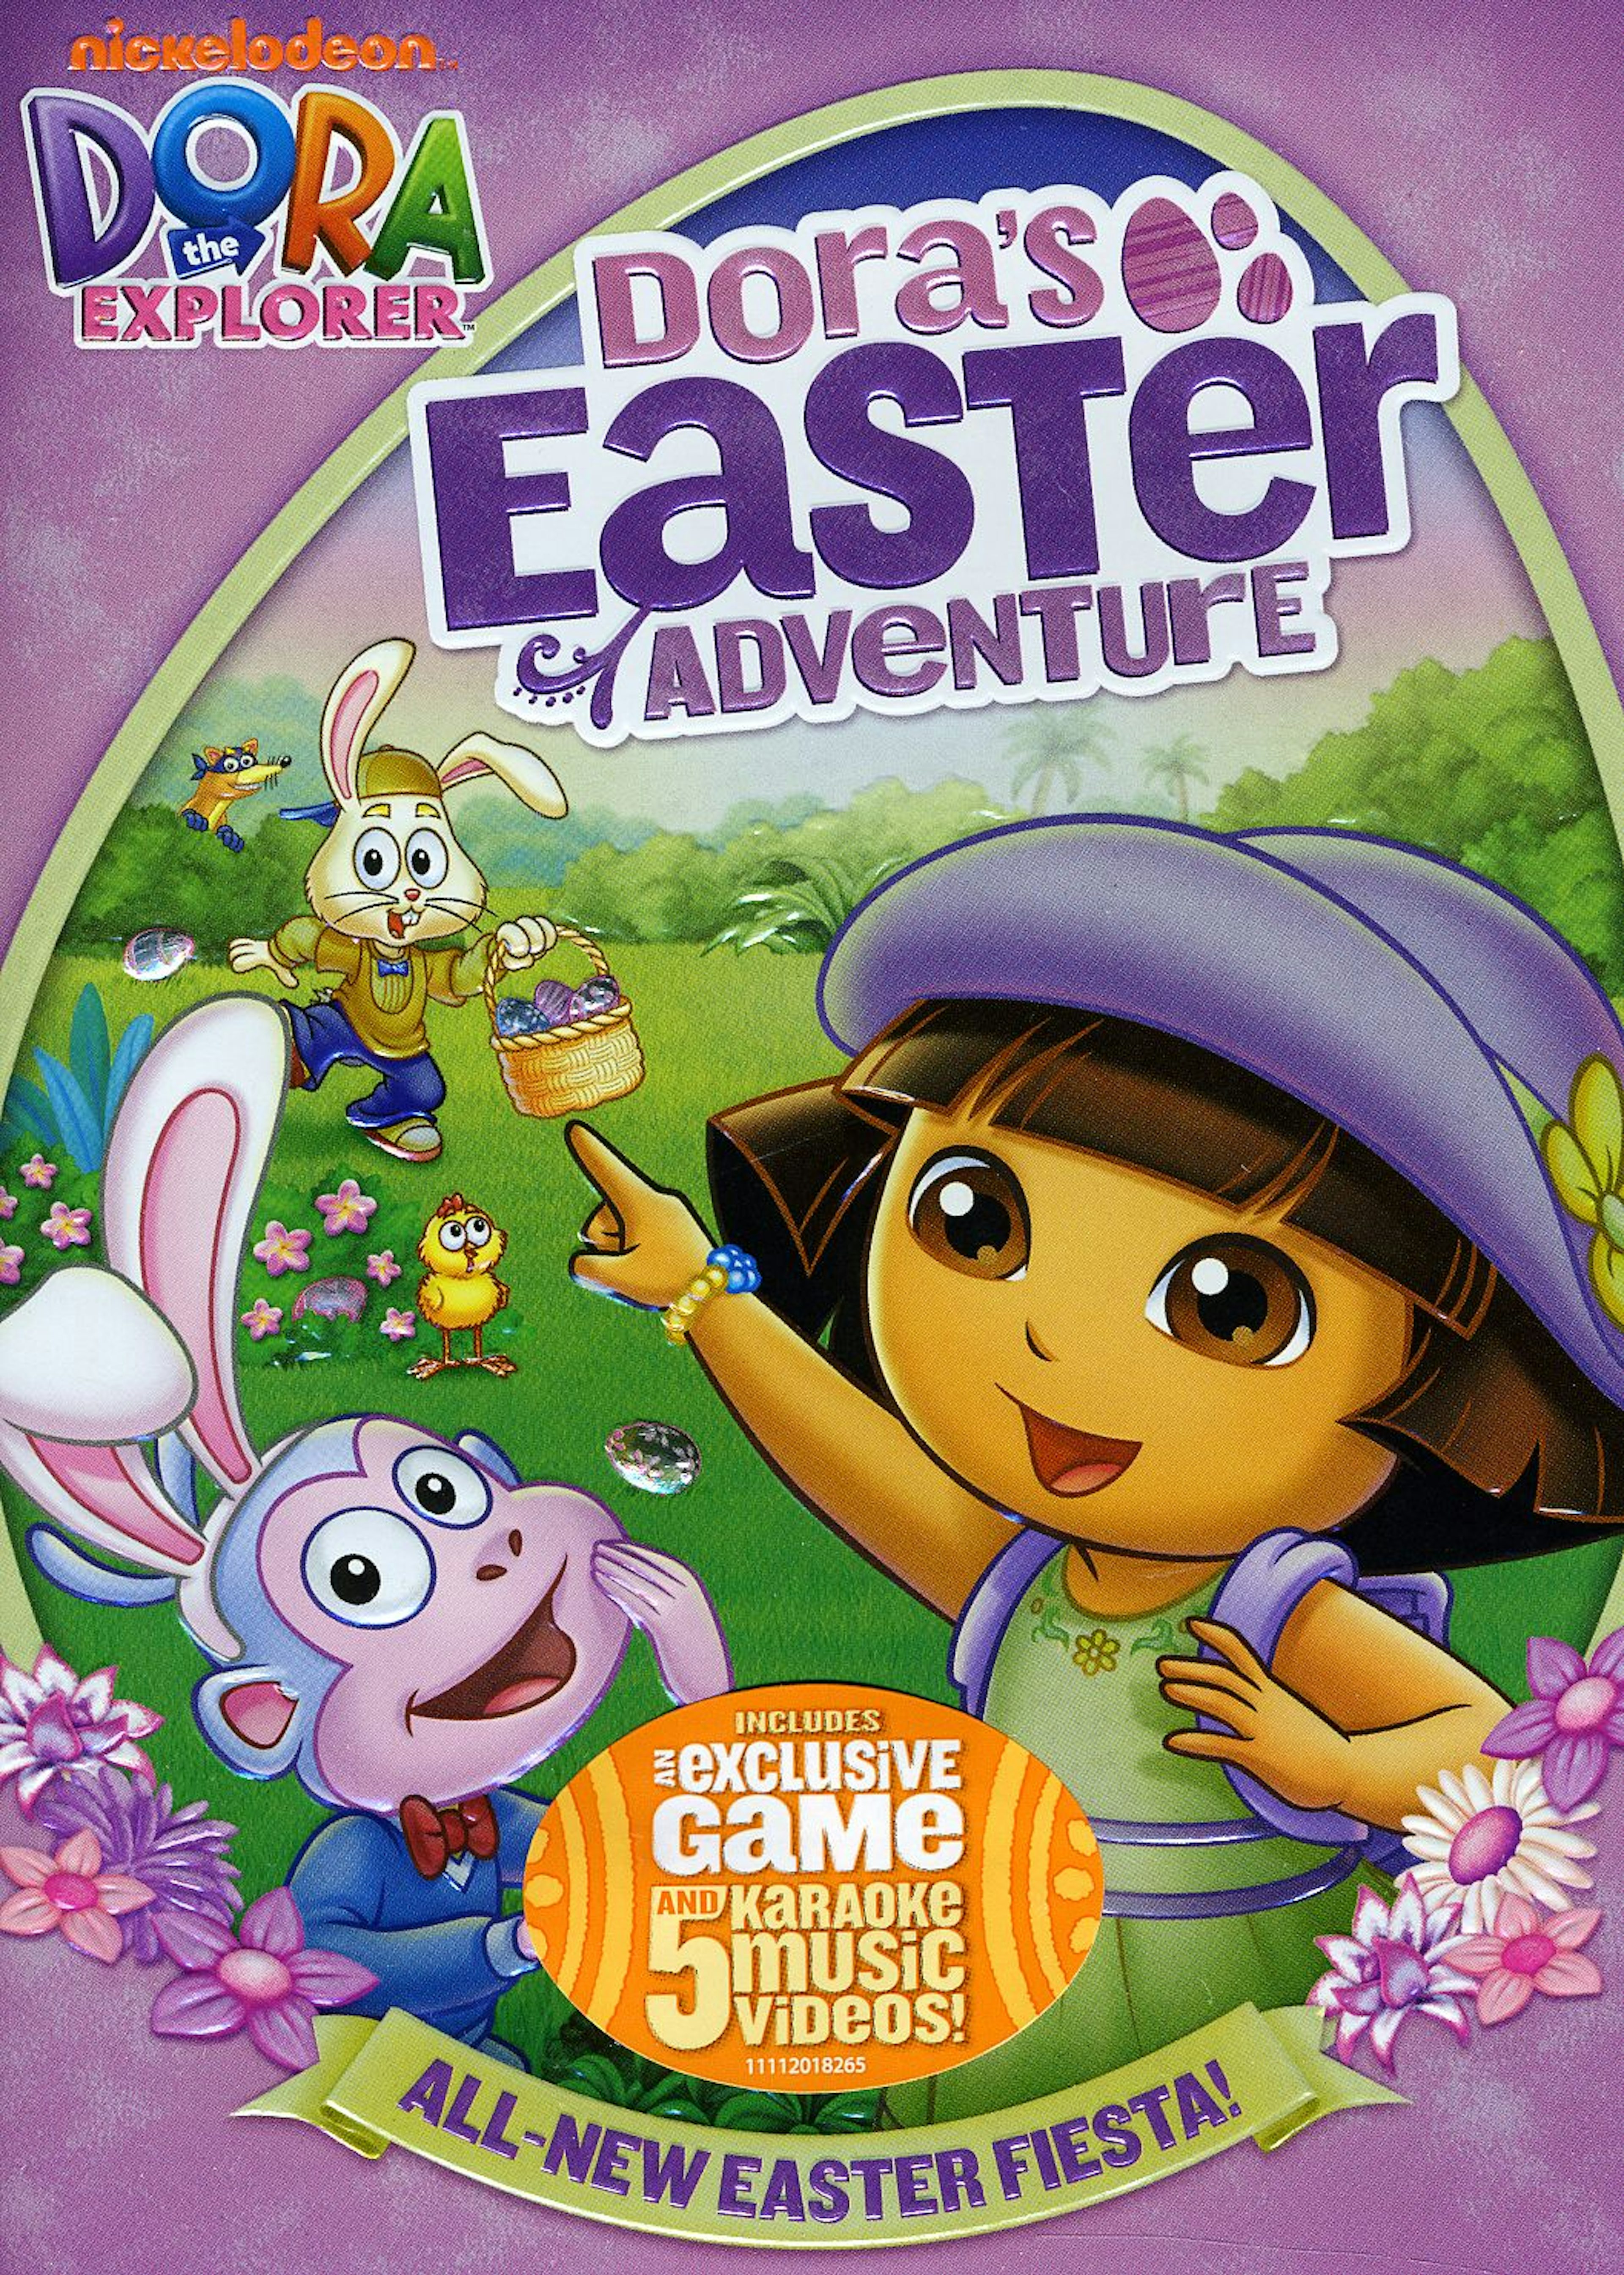 Dora s adventure